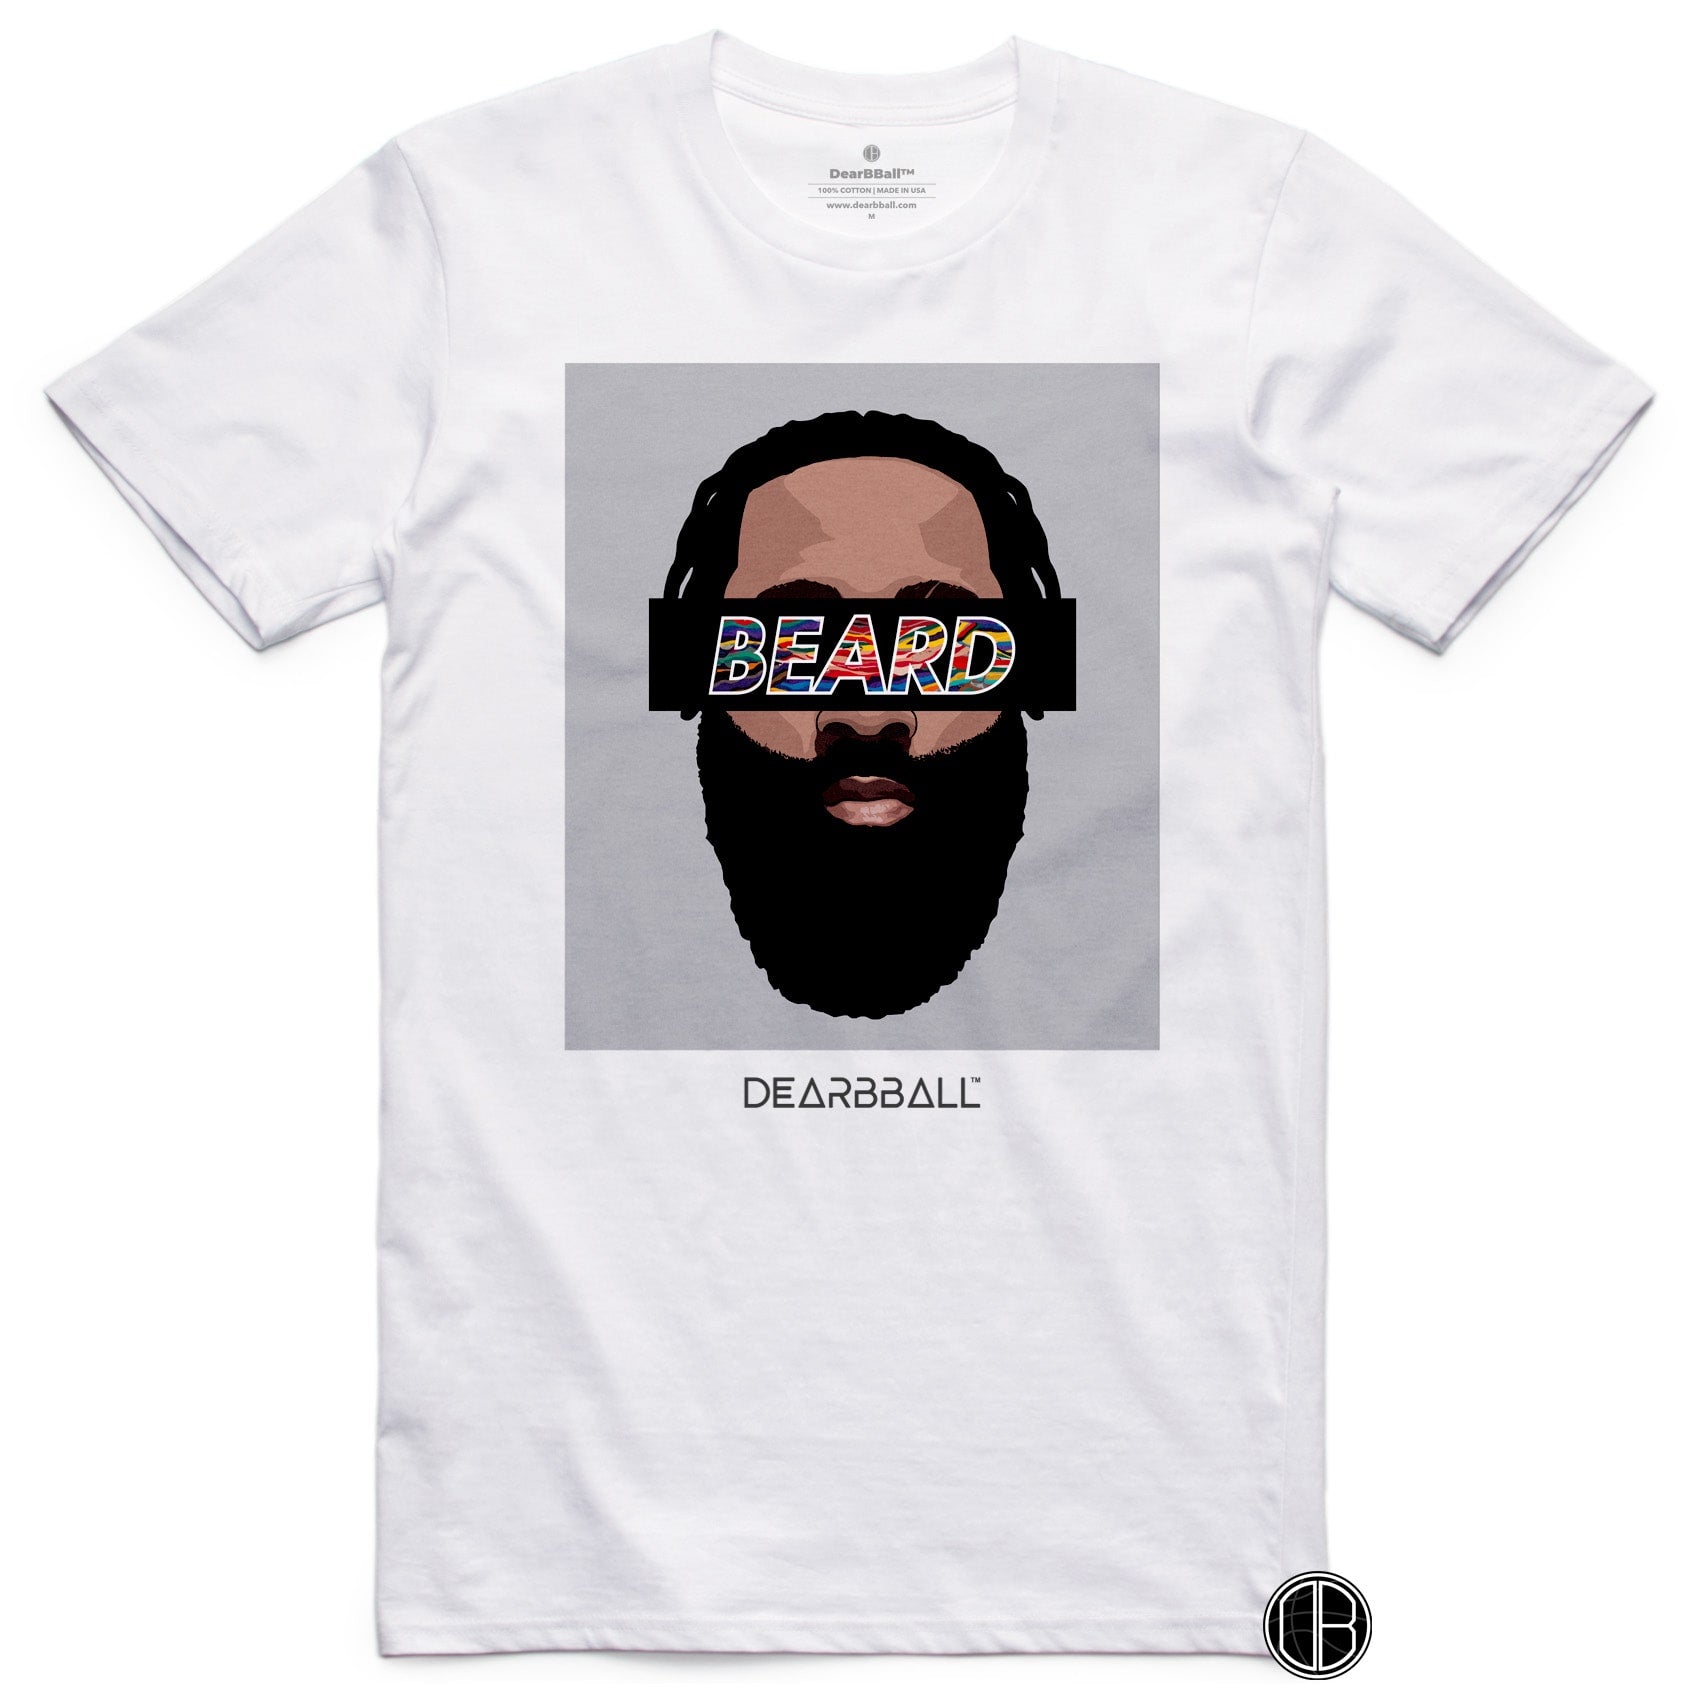 James Harden T-Shirt Bio - The Beard Grey Nets Brooklyn Nets Basketball Dearbball noir